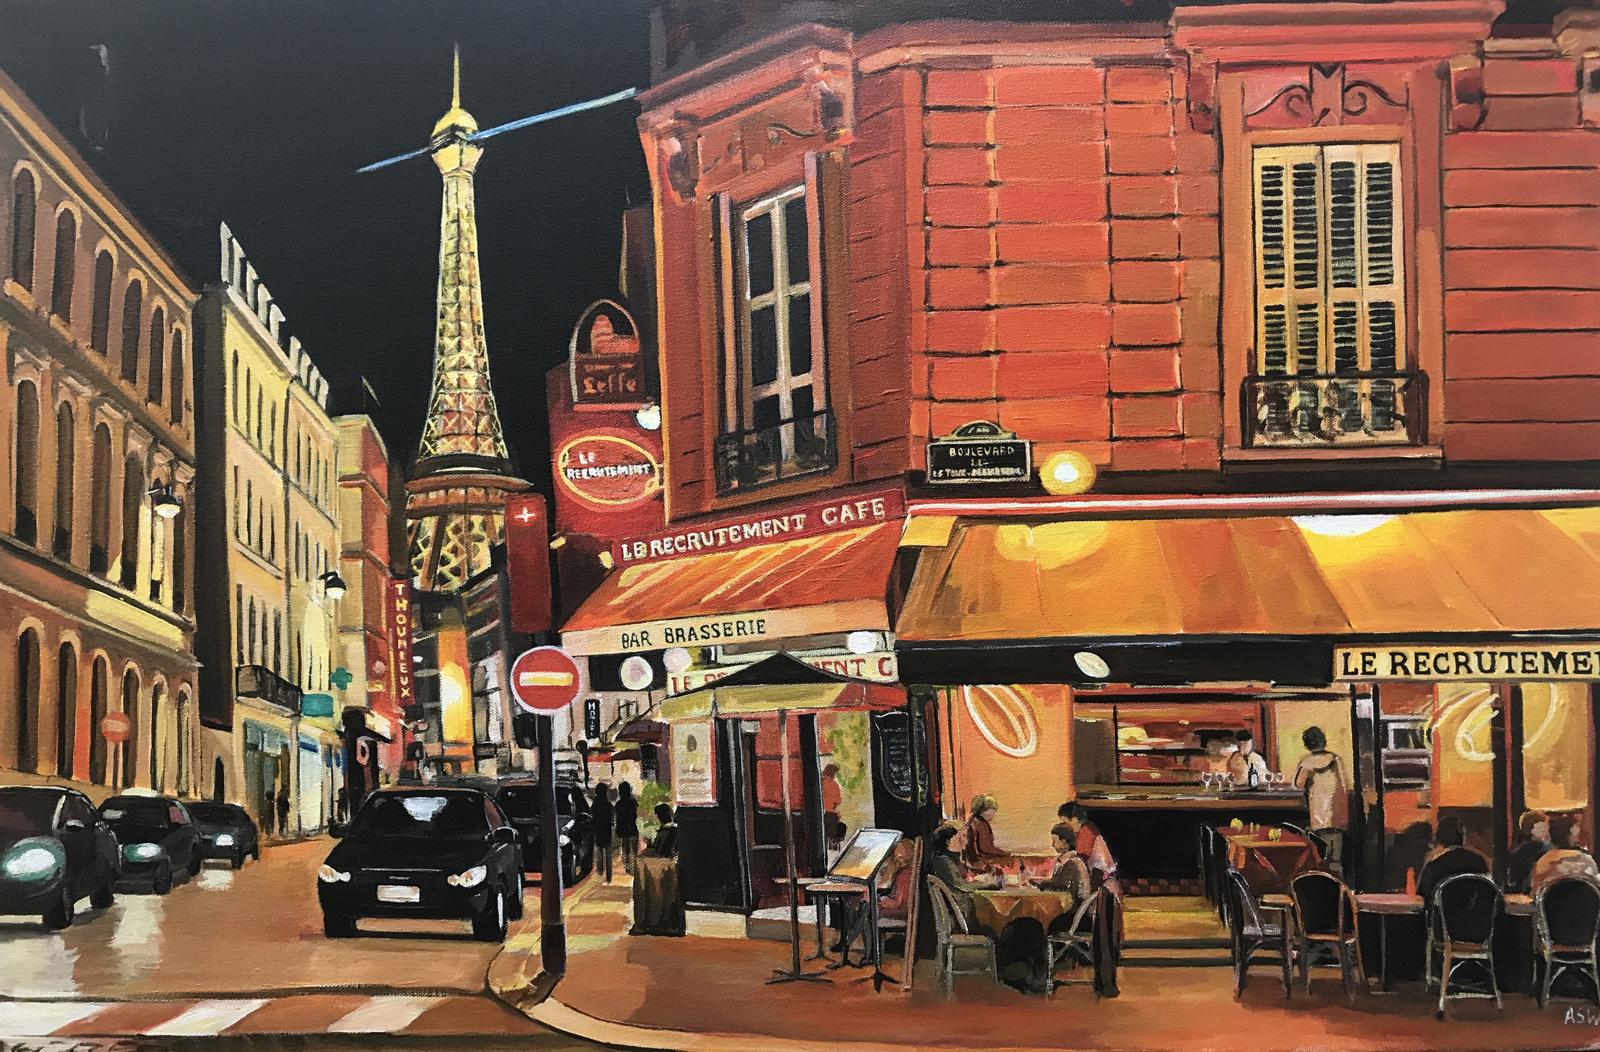 Parisian Café Tour Eiffel Paris France Limited Edition Print by British Artist. Un tirage en édition limitée de haute qualité de la série européenne d'Angela, incorporant la Tour Eiffel - l'une des structures les plus emblématiques d'Europe. Le café